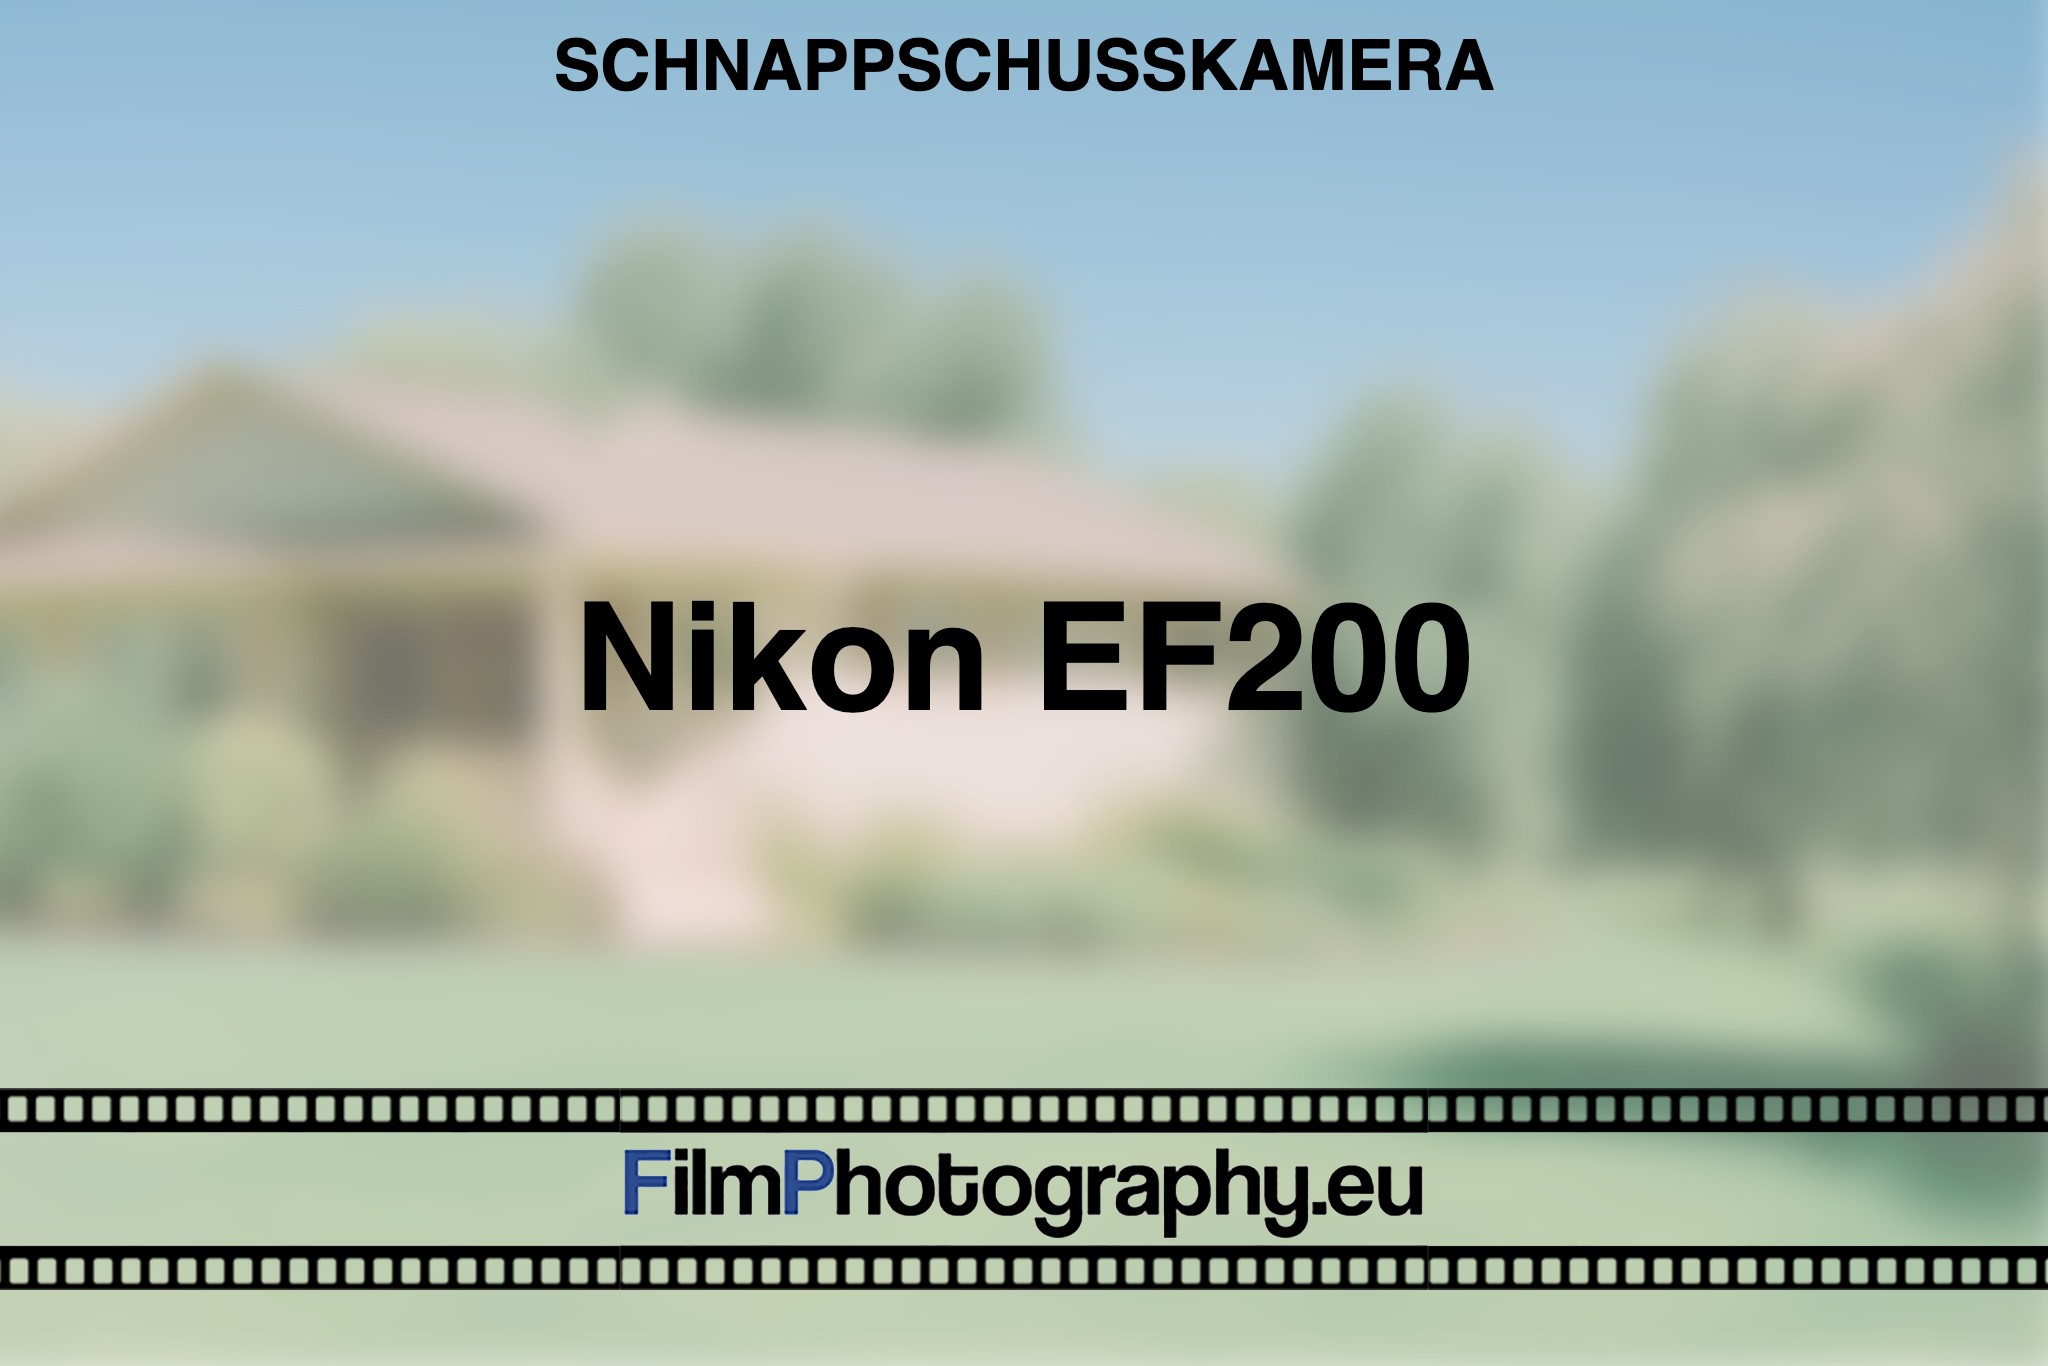 nikon-ef200-schnappschusskamera-bnv